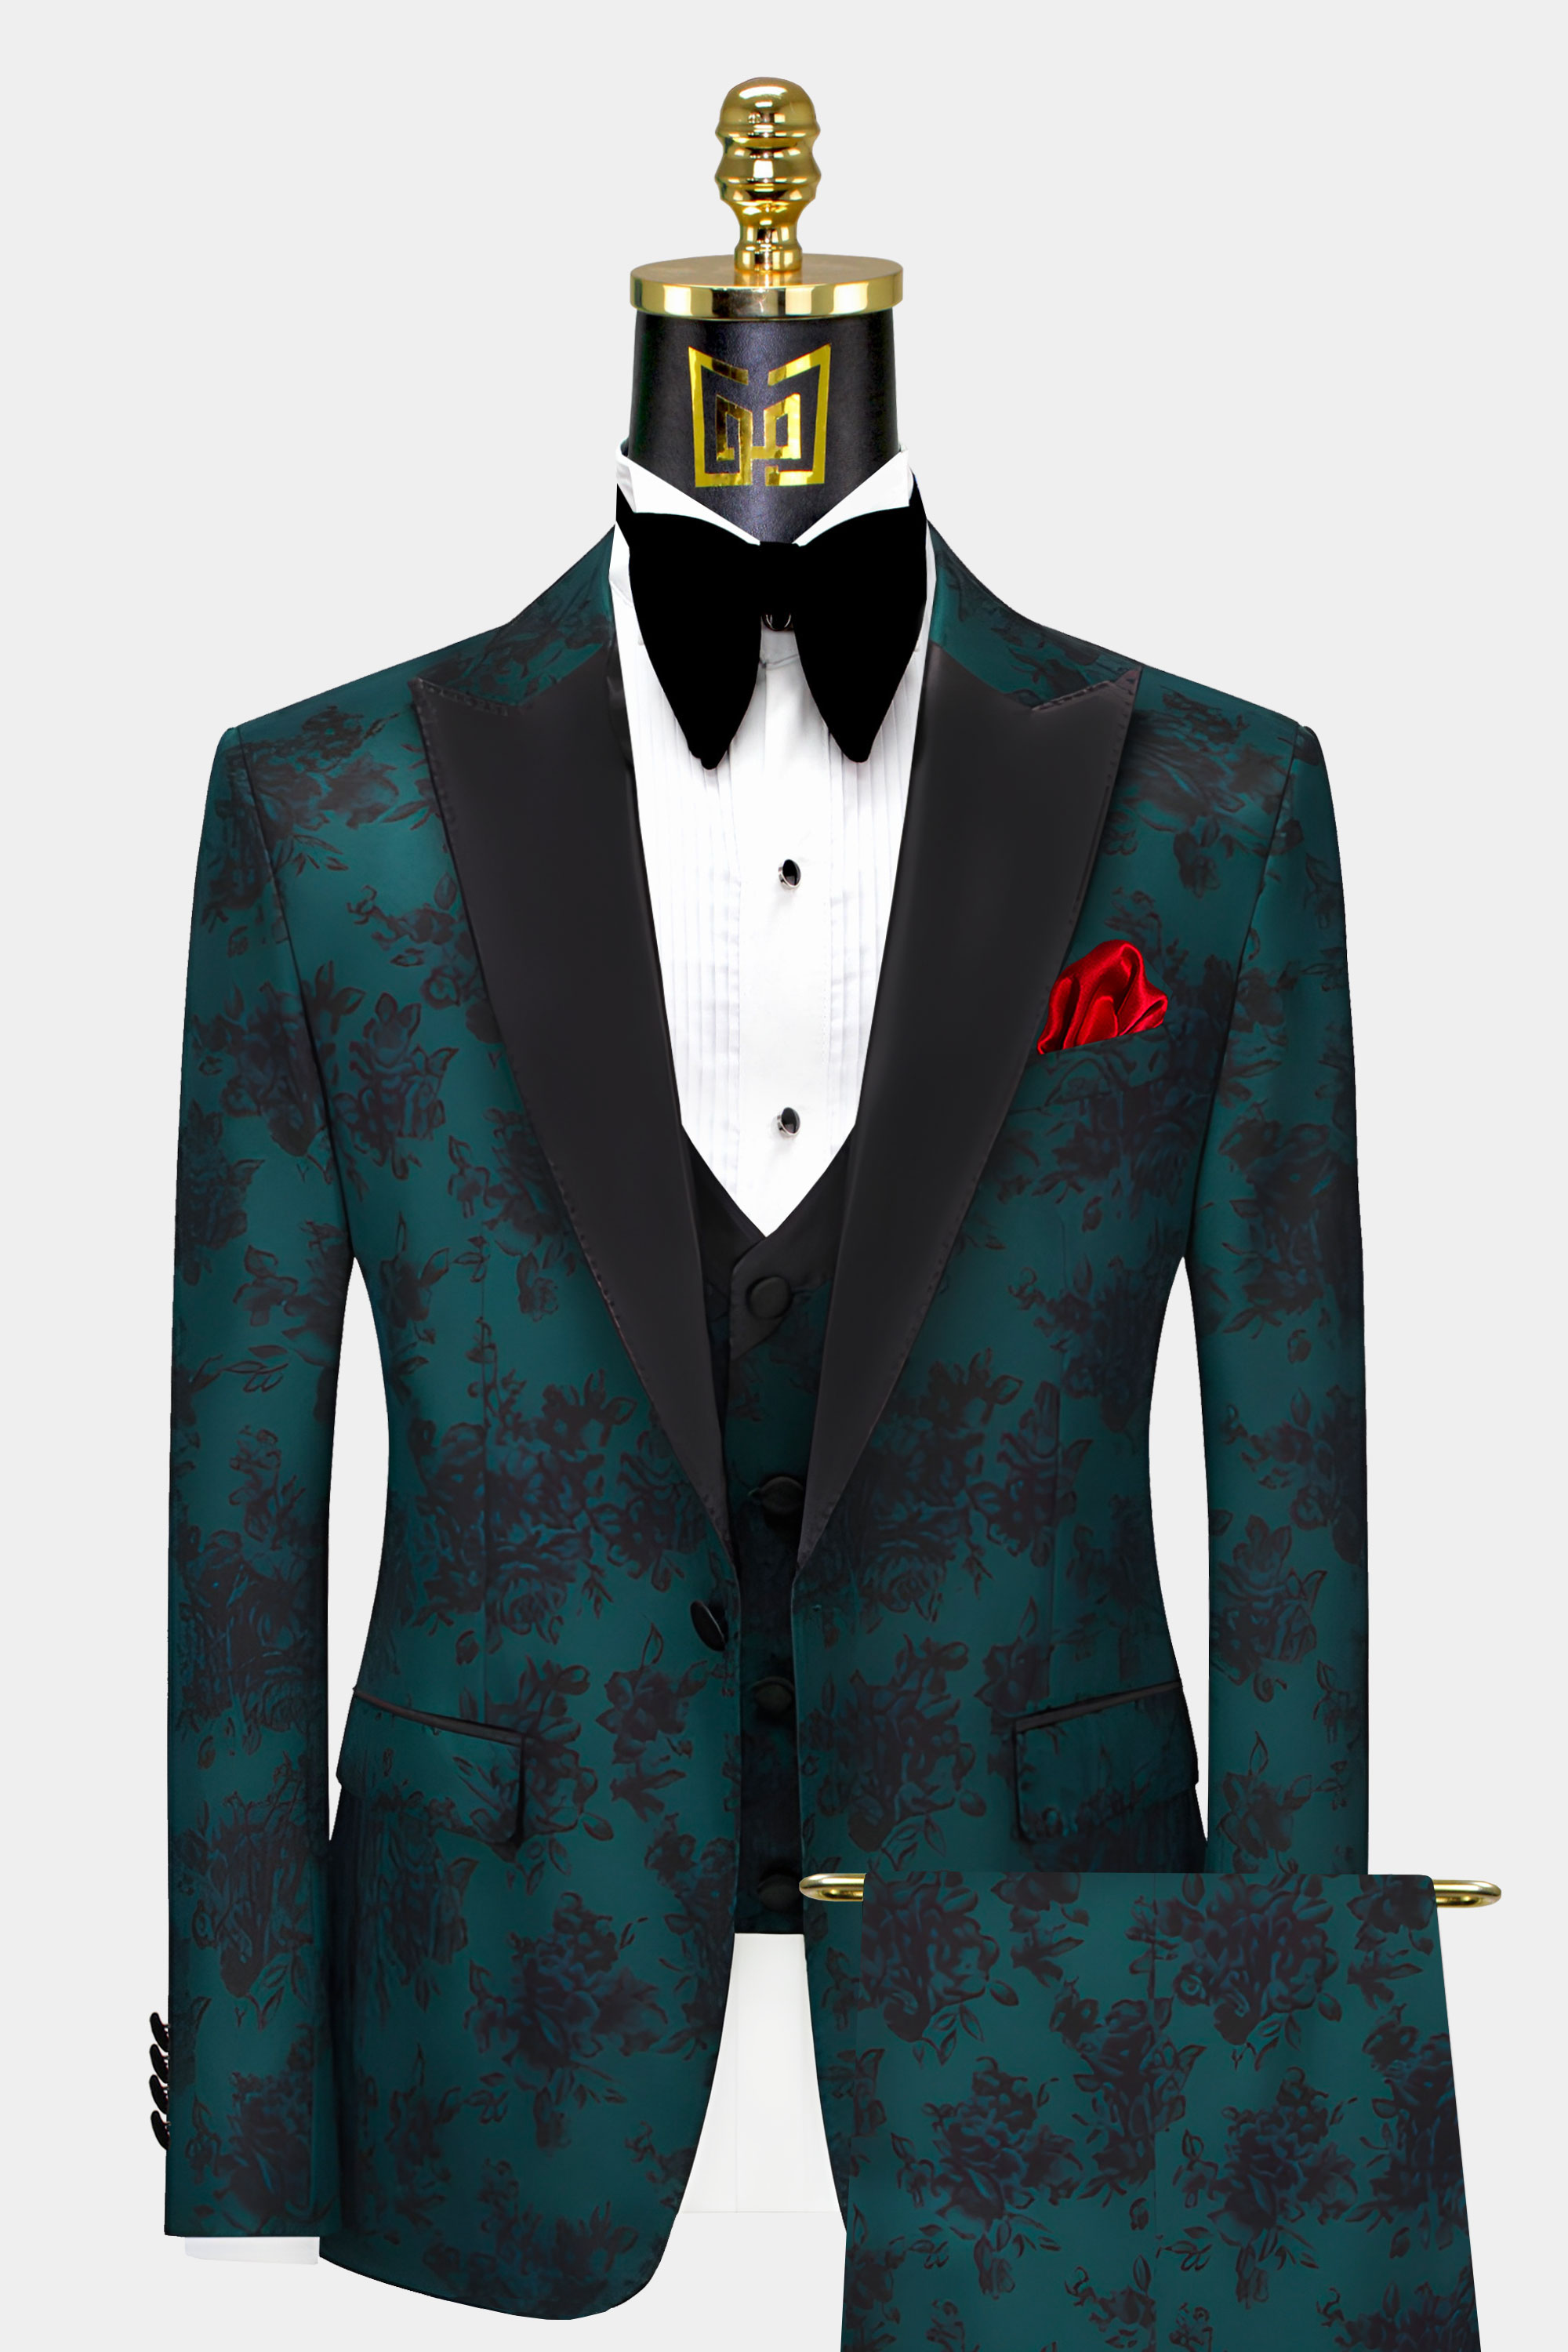 Mens-Forest-Green-Tuxedo-Groom-Prom-Wedding-Suit-For-Men-from-Gentlemansguru.com